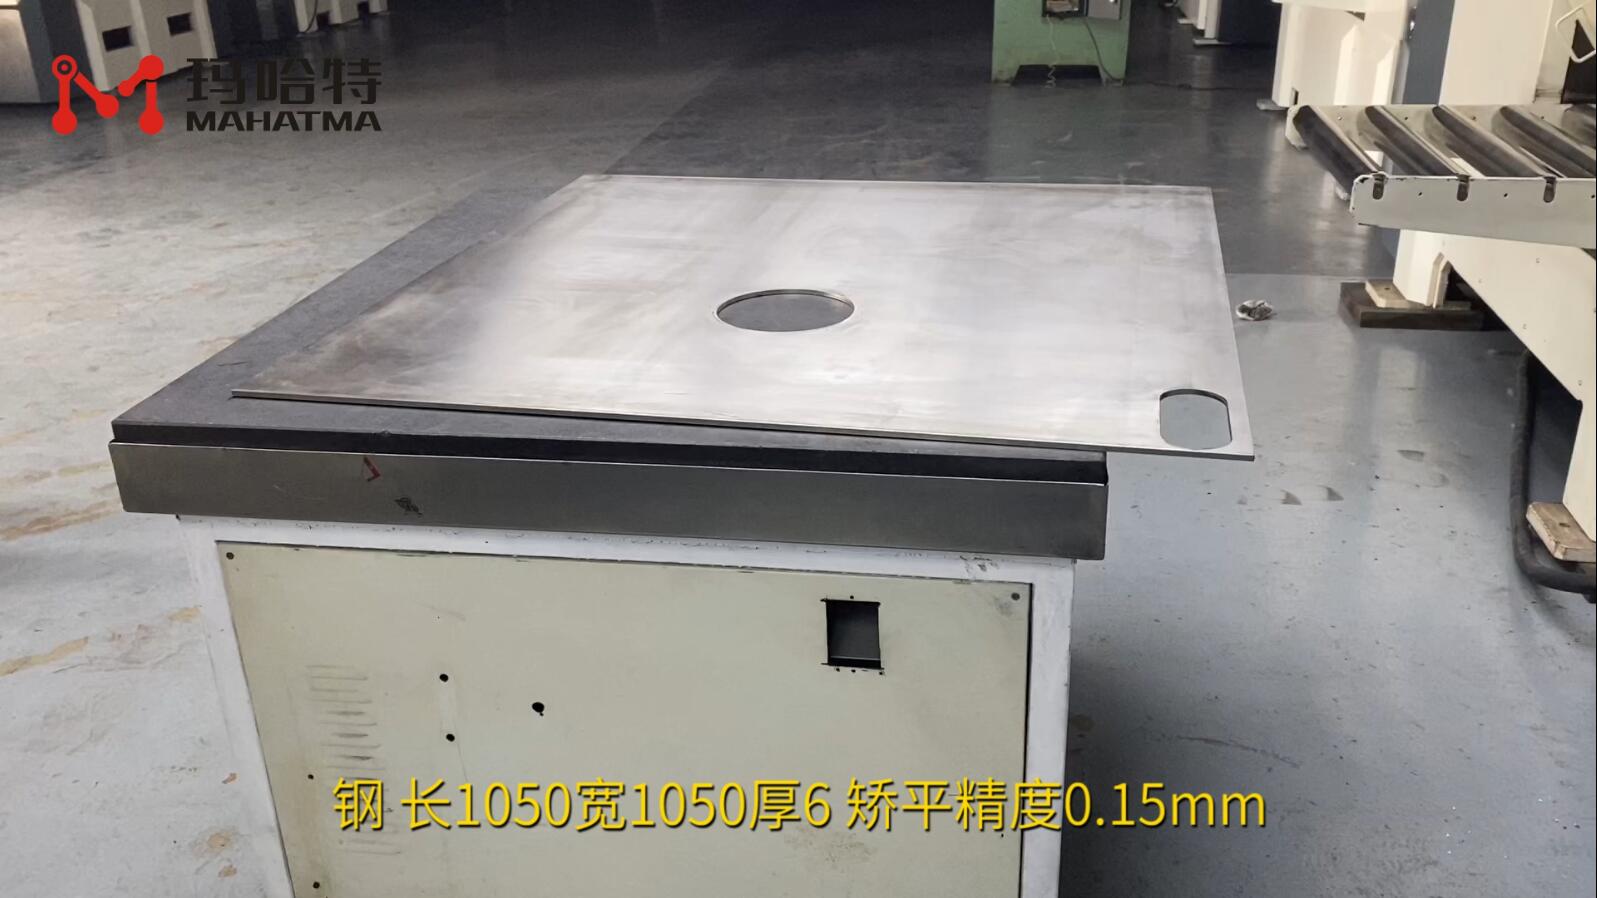 钢 MHT120-1300 正方形 长1050宽1050厚6 矫平精度0.15mm